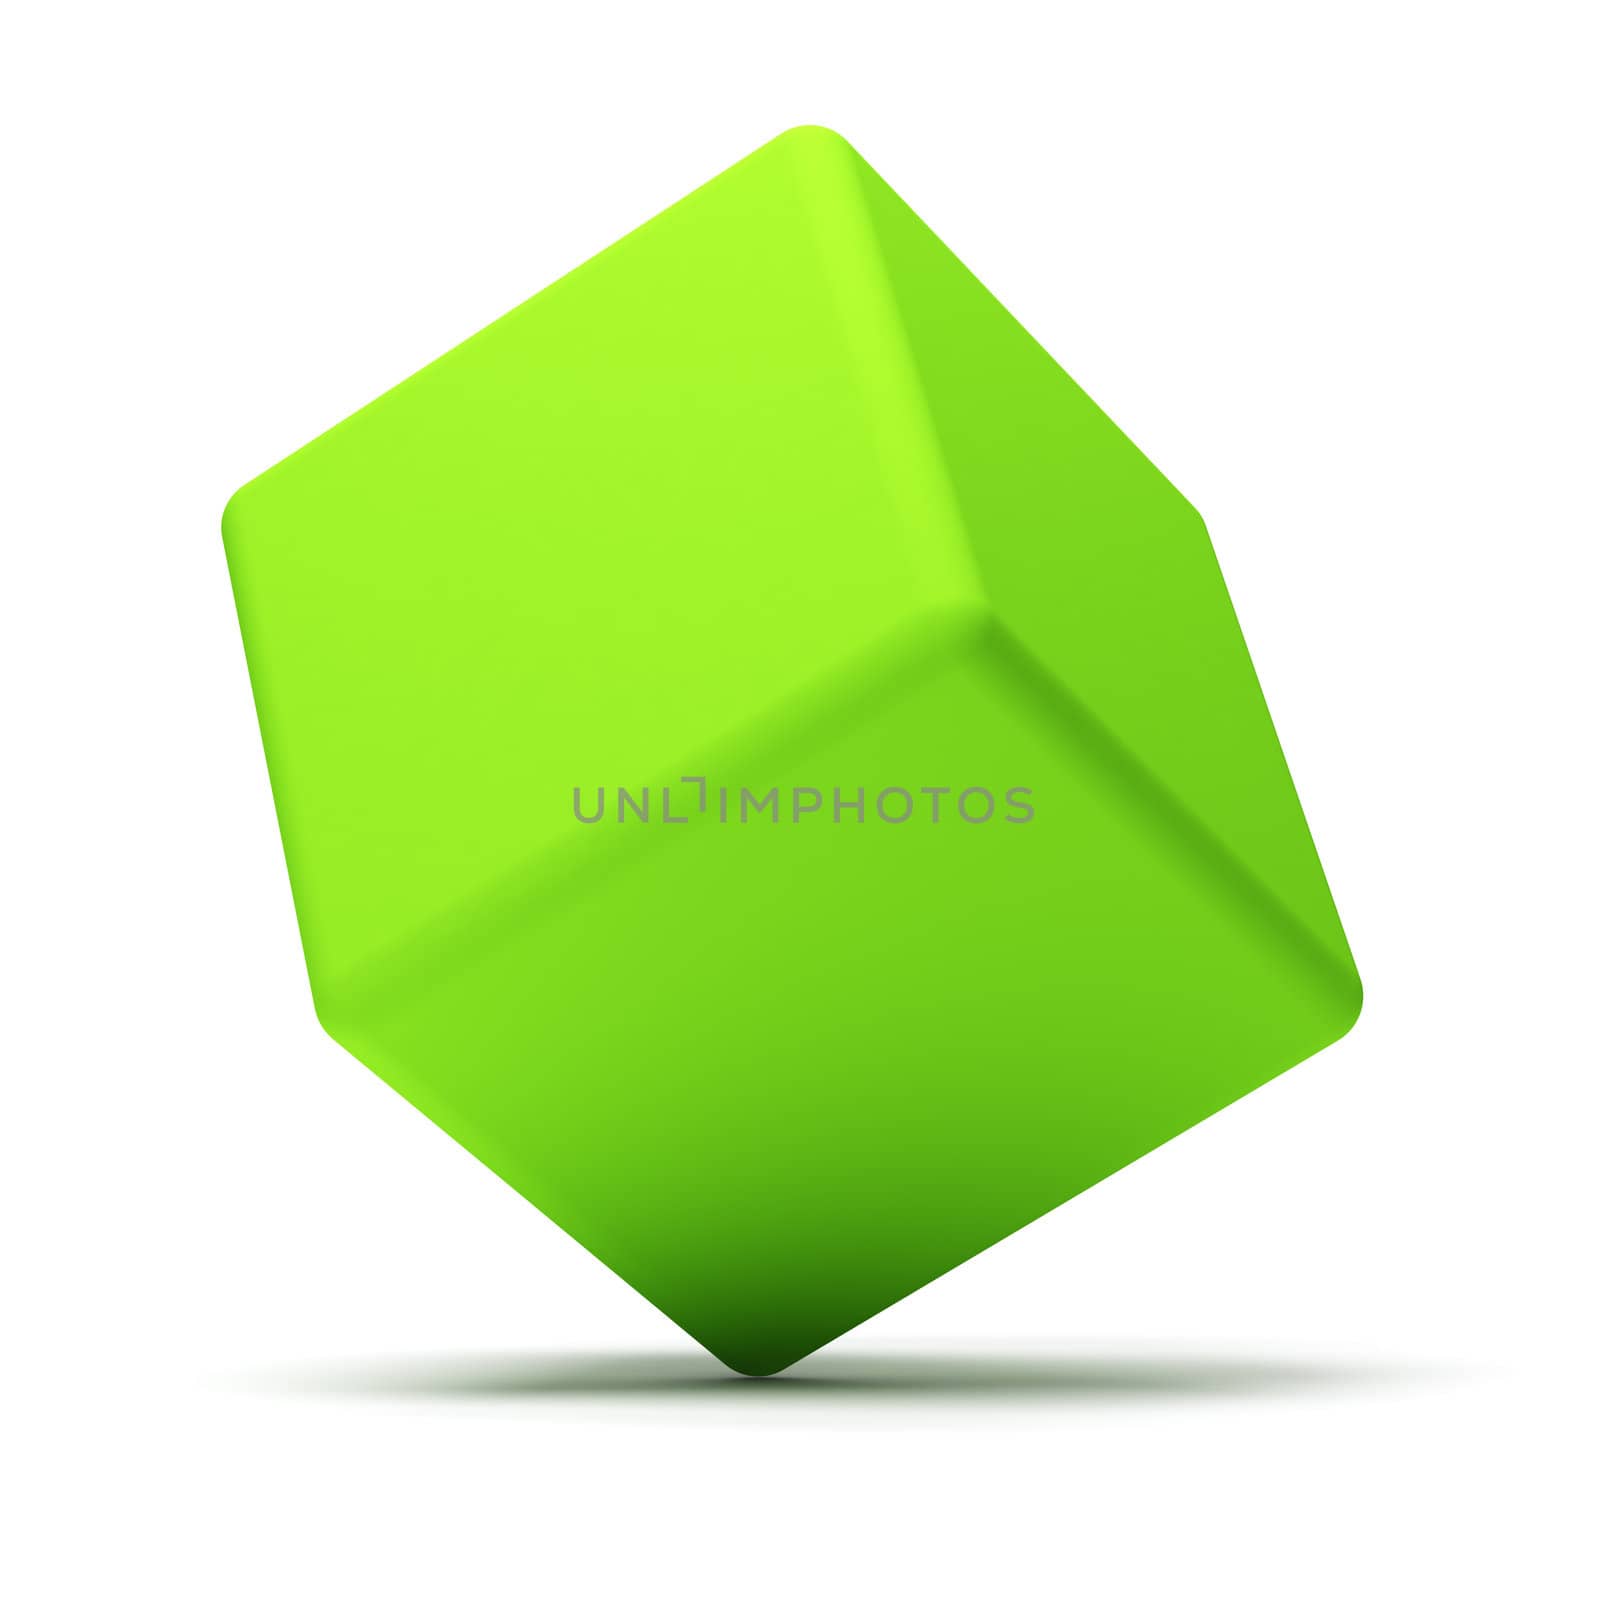 Cube by maxkrasnov